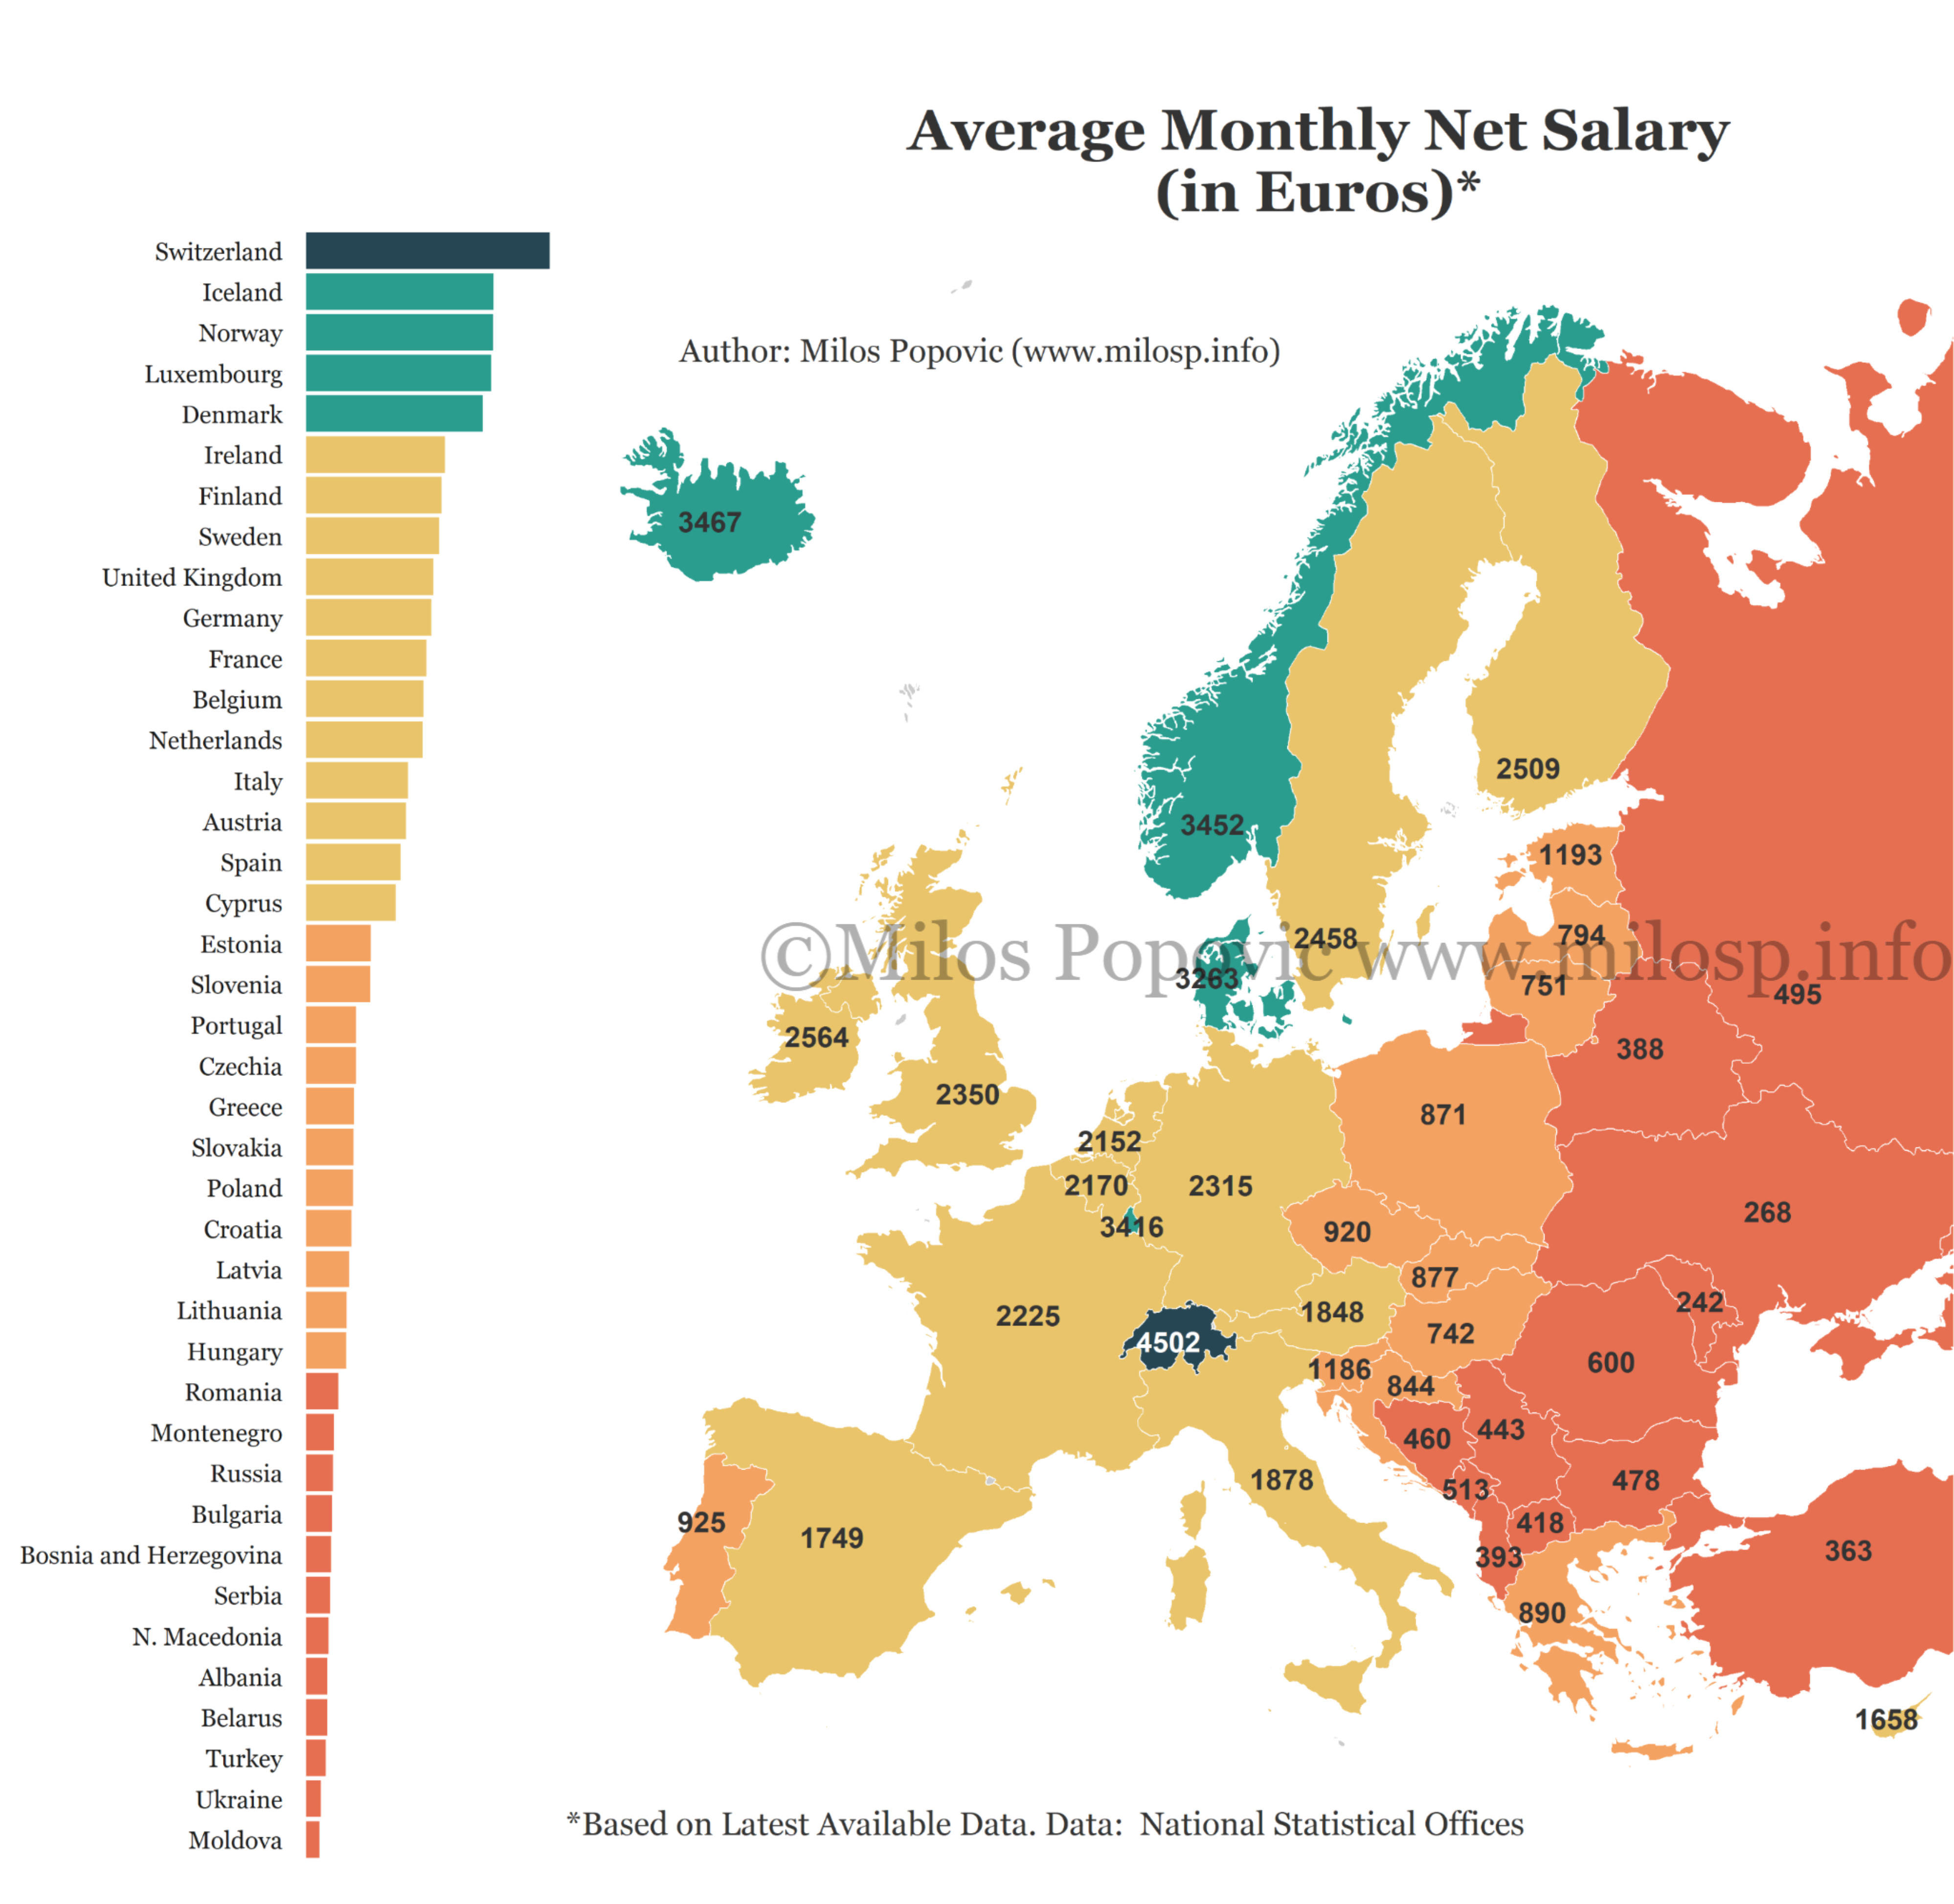 Polvo labio siesta El revelador mapa de los salarios netos medios en Europa